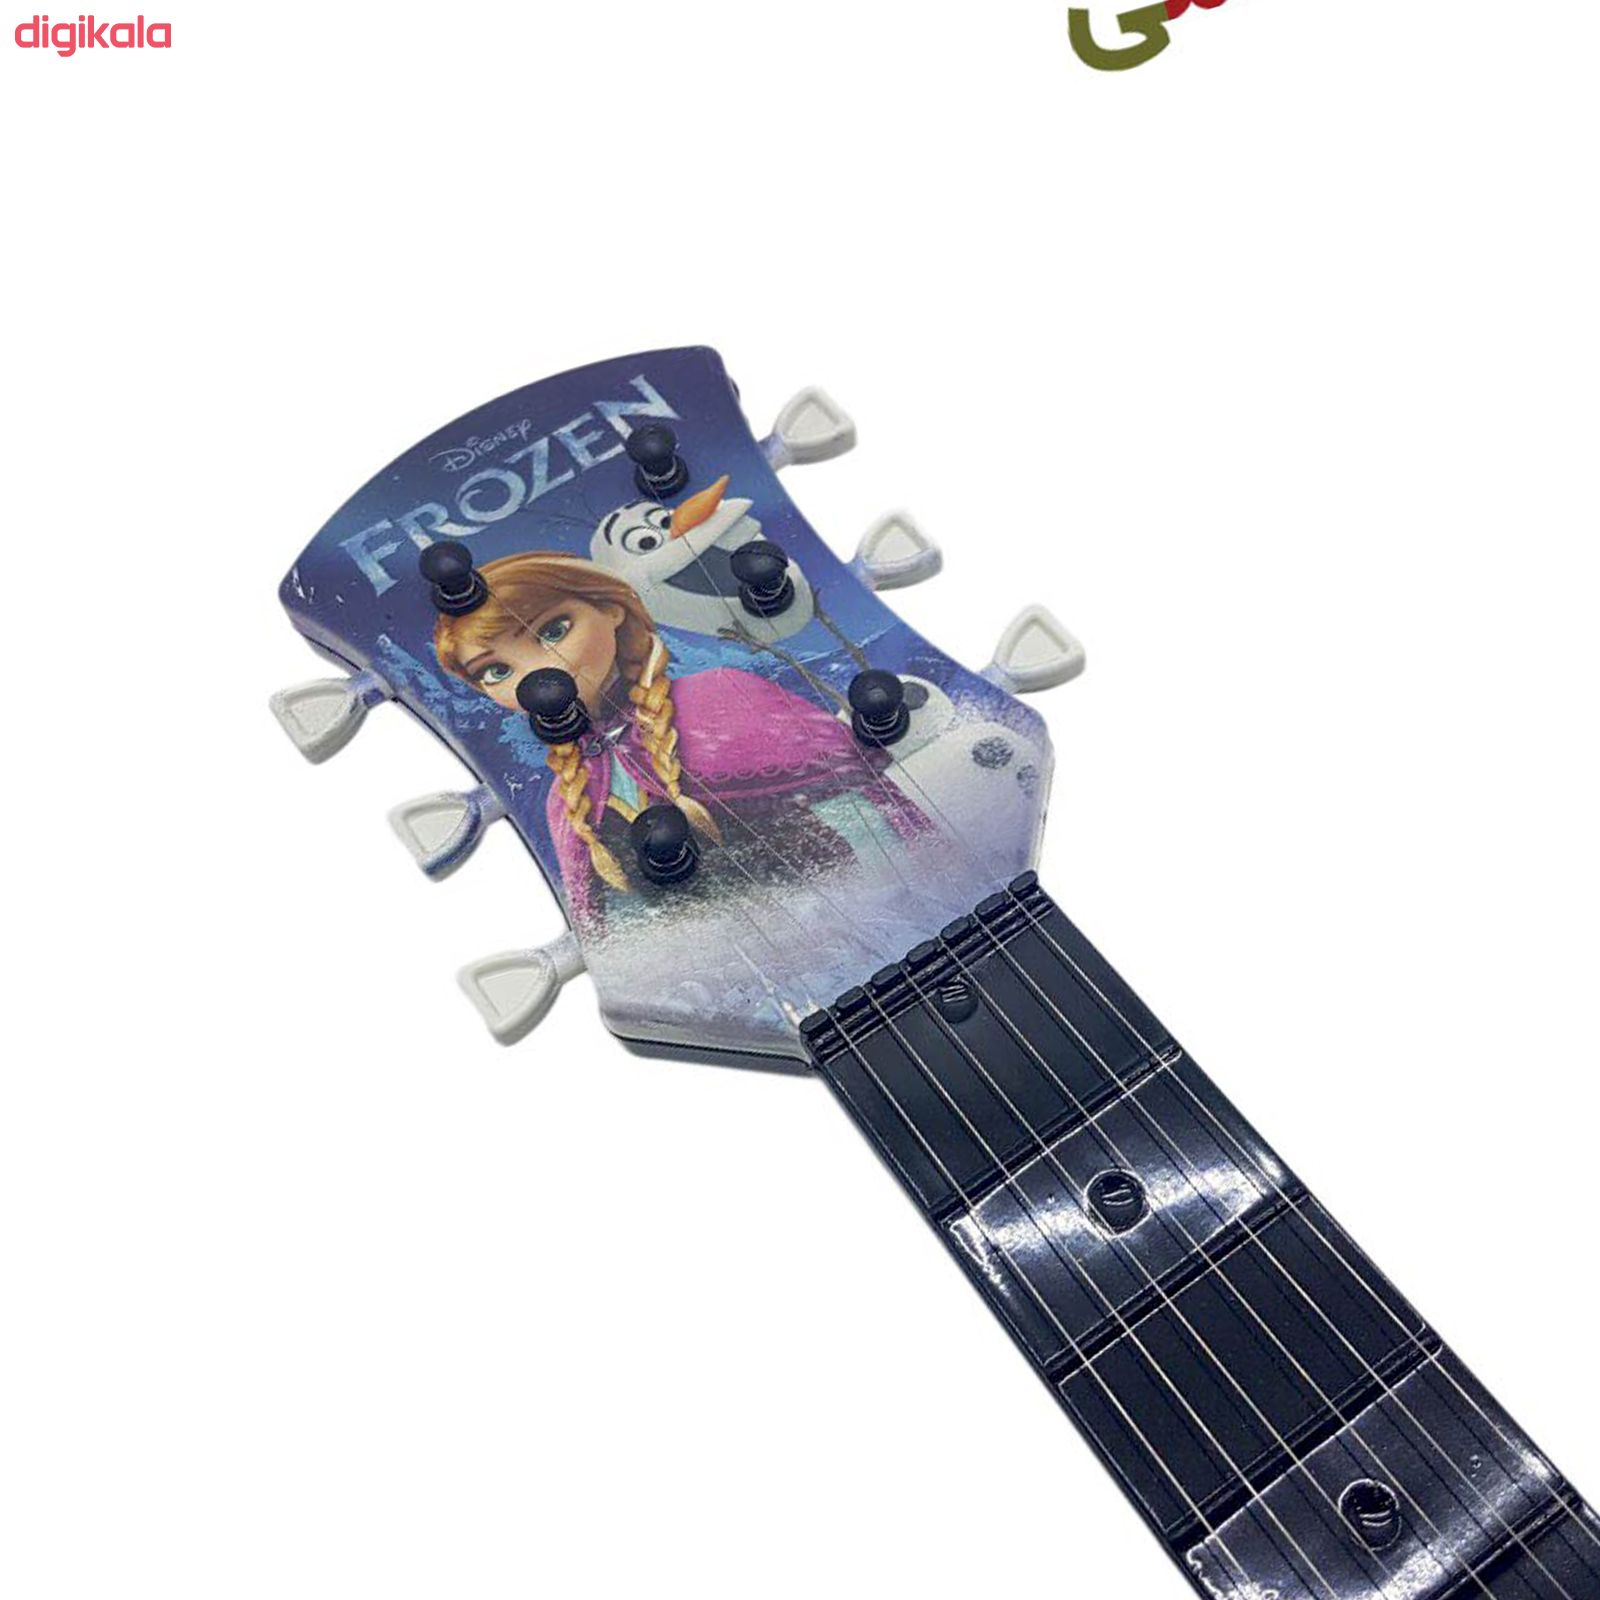 گیتار اسباب بازی مدل S90 طرح Frozen